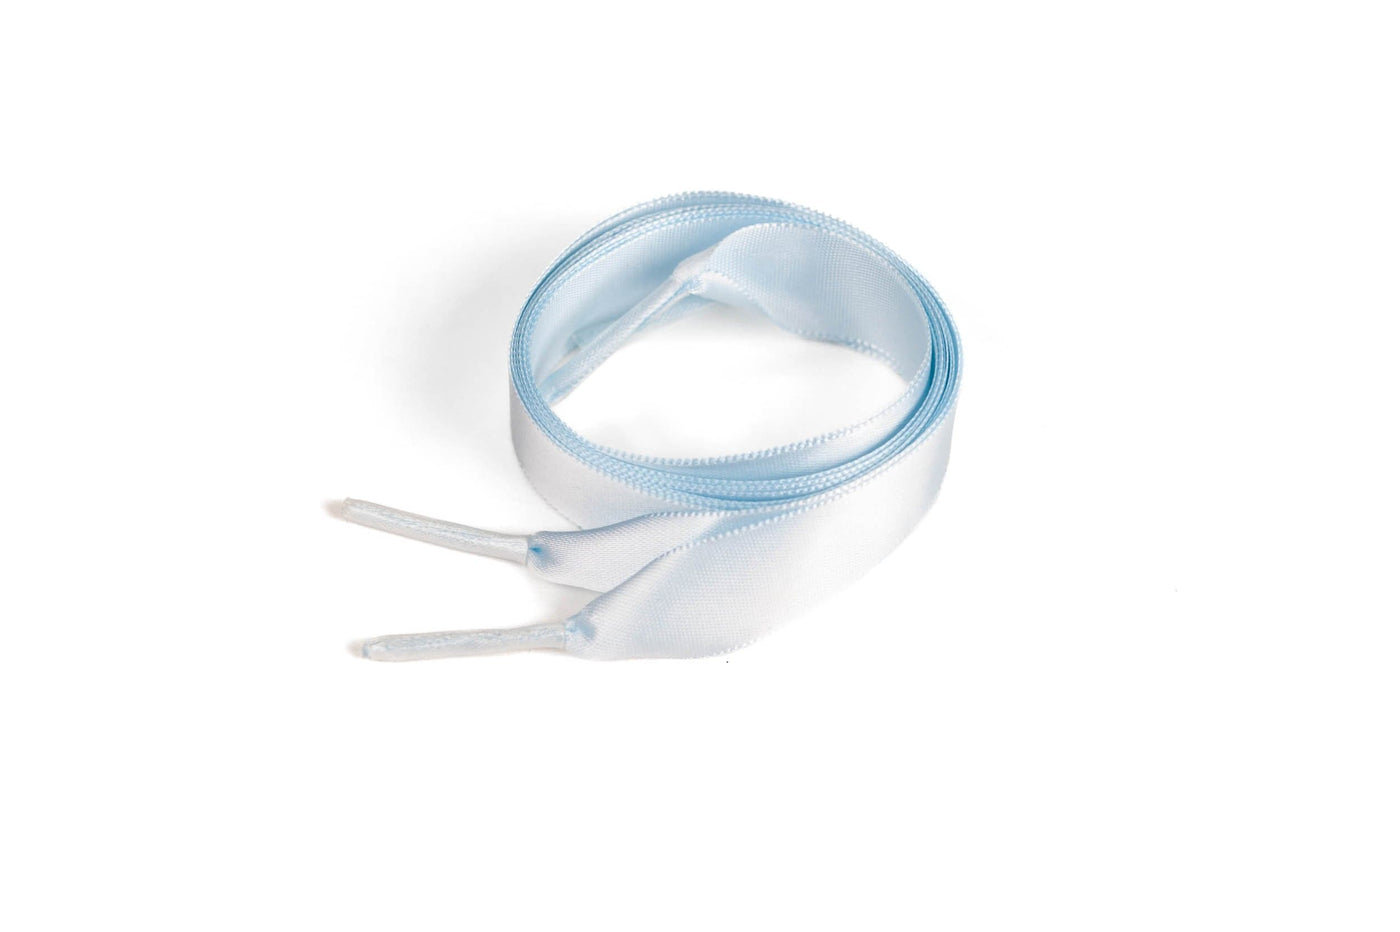 Satin Ribbon 5/8" Premium Quality Shoelaces - 72" Inch Length Pale Blue